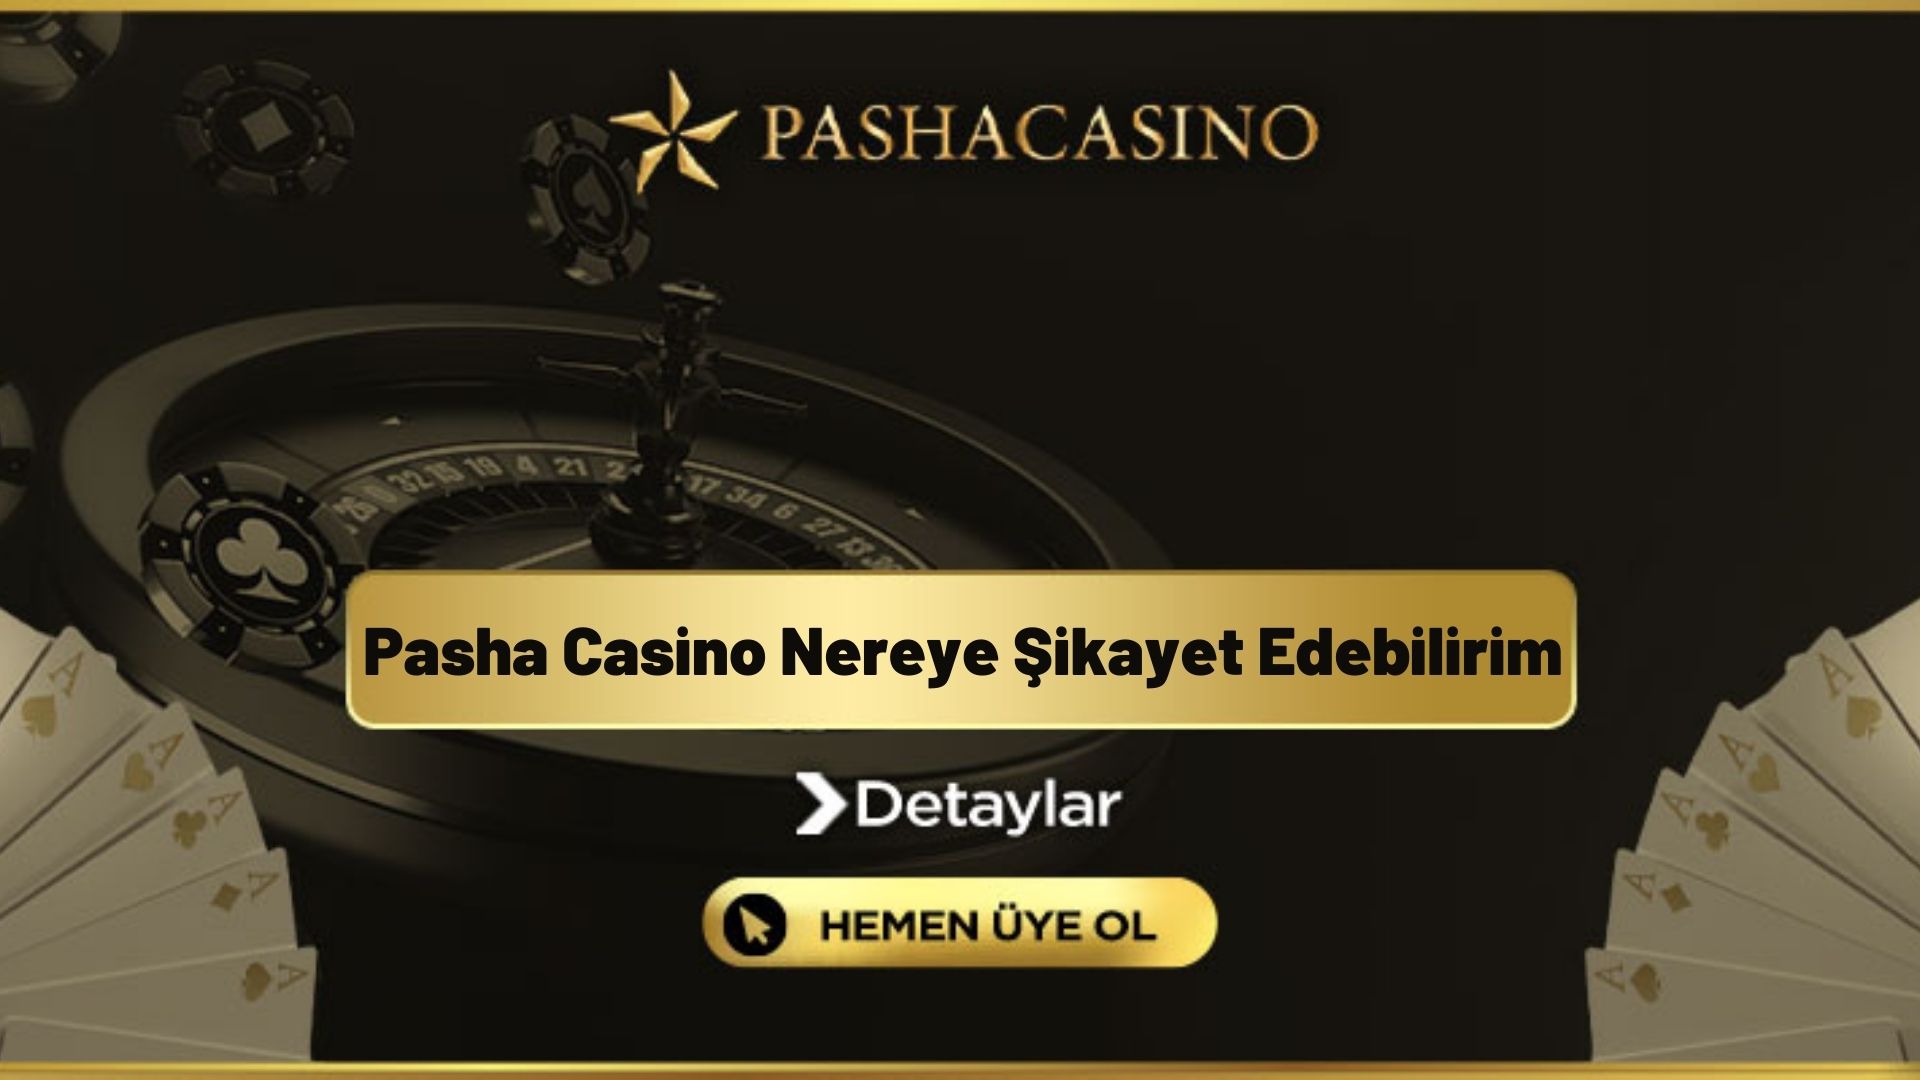 Pasha Casino Nereye Şikayet Edebilirim